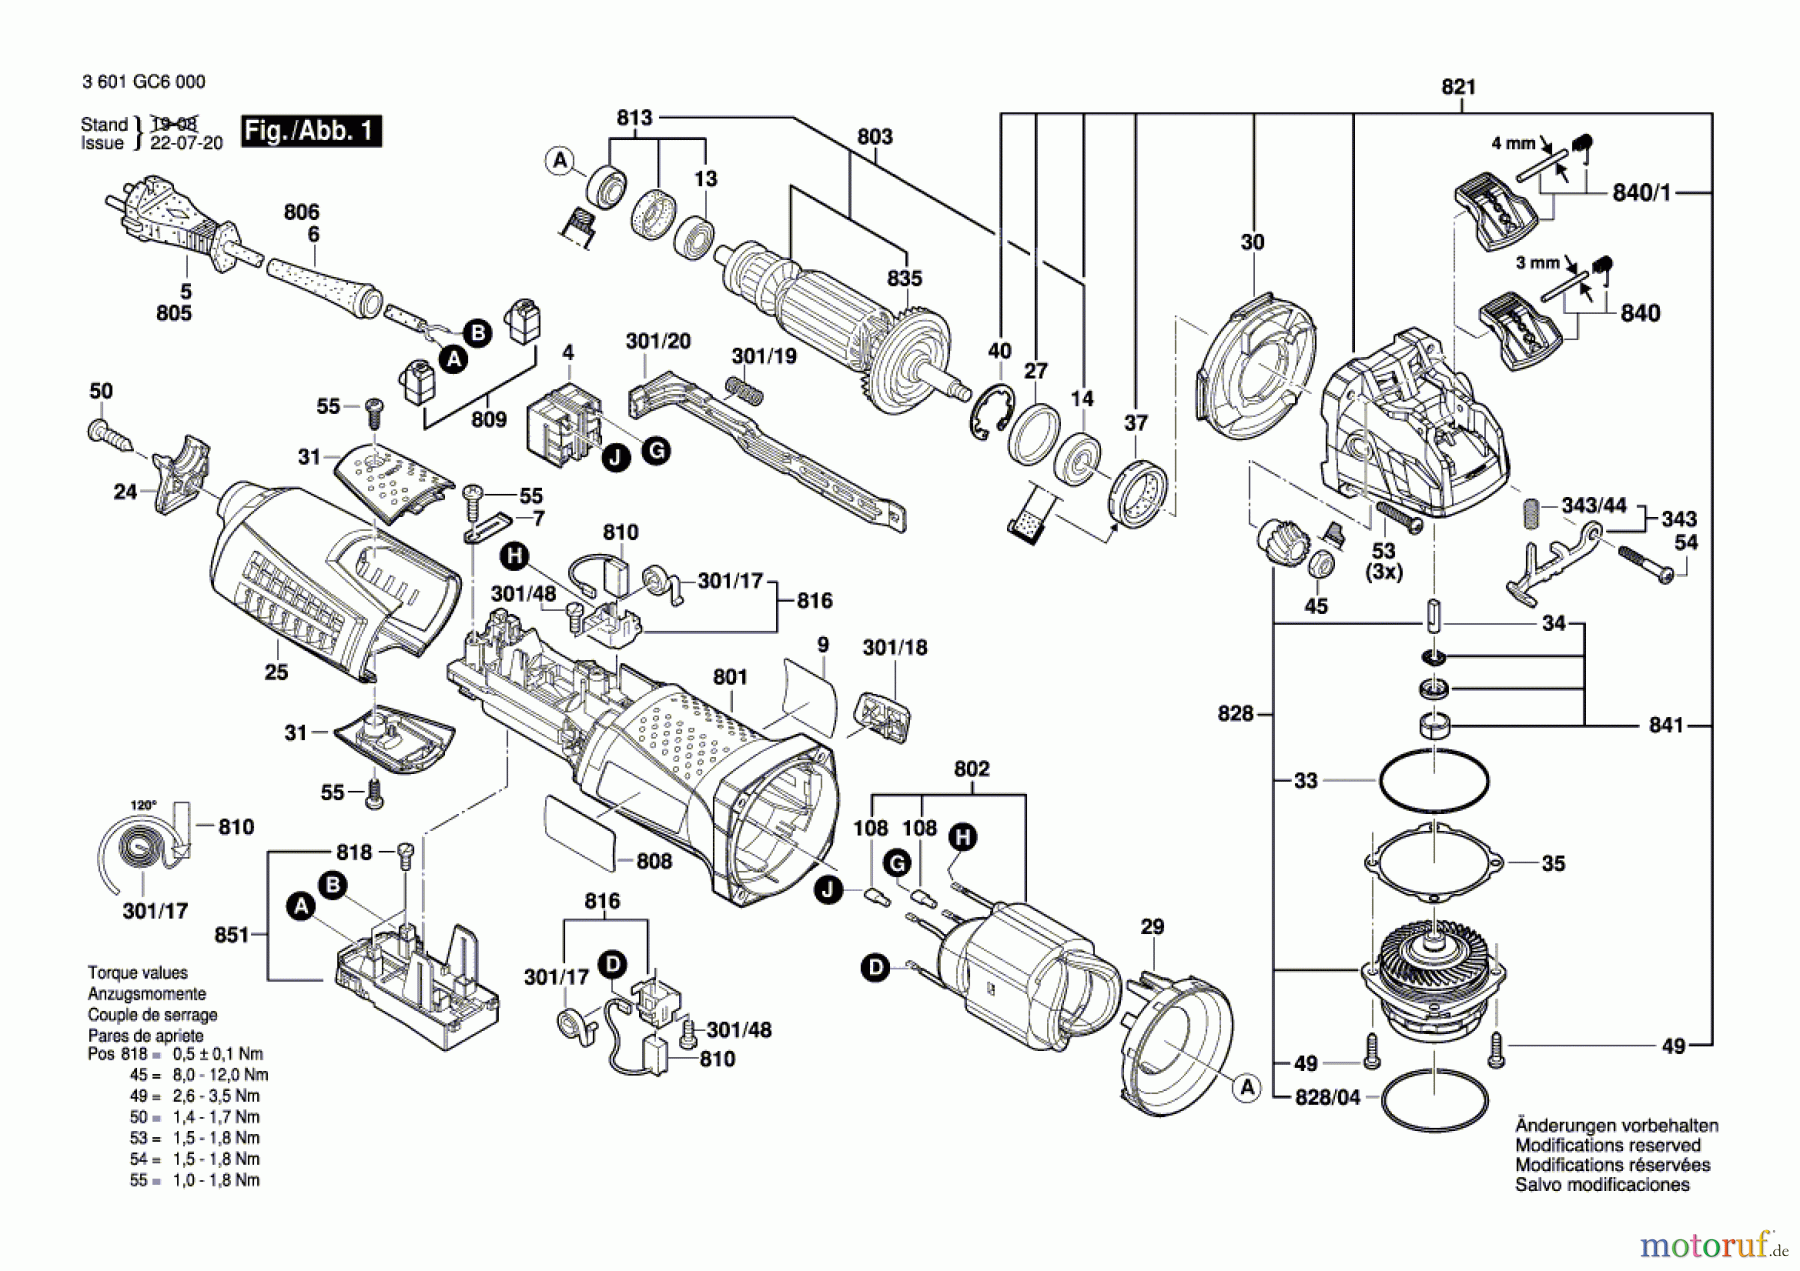  Bosch Werkzeug Winkelschleifer GWX 17-150 Seite 1